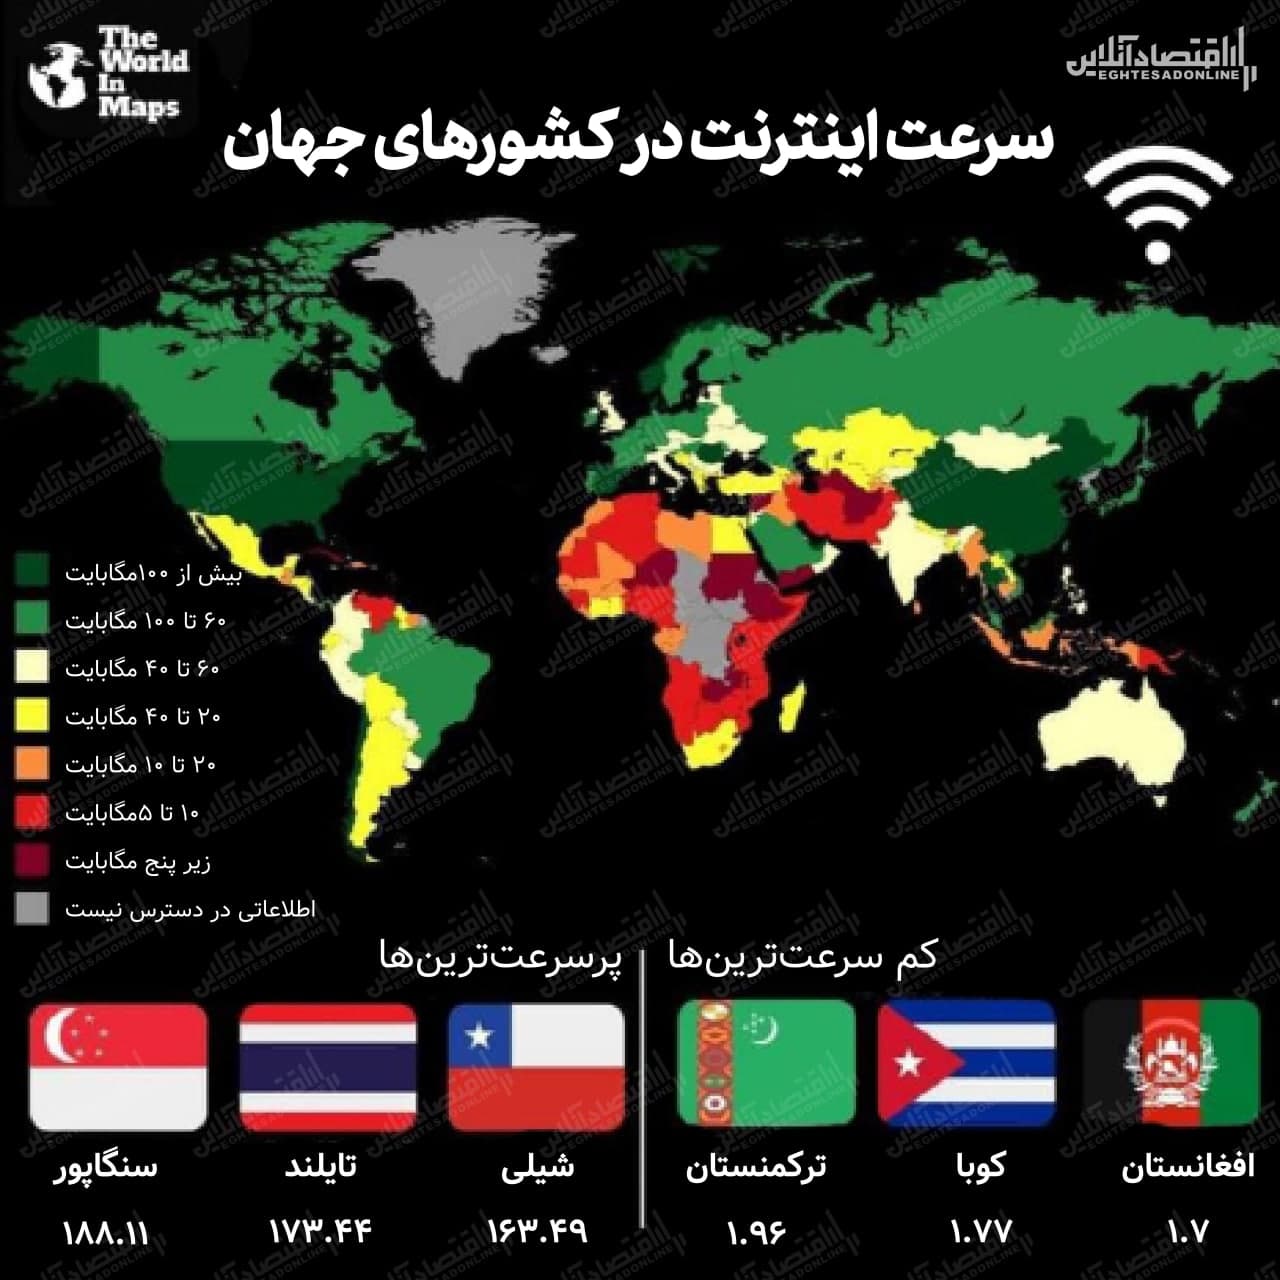 سرعت اینترنت در کشورهای جهان